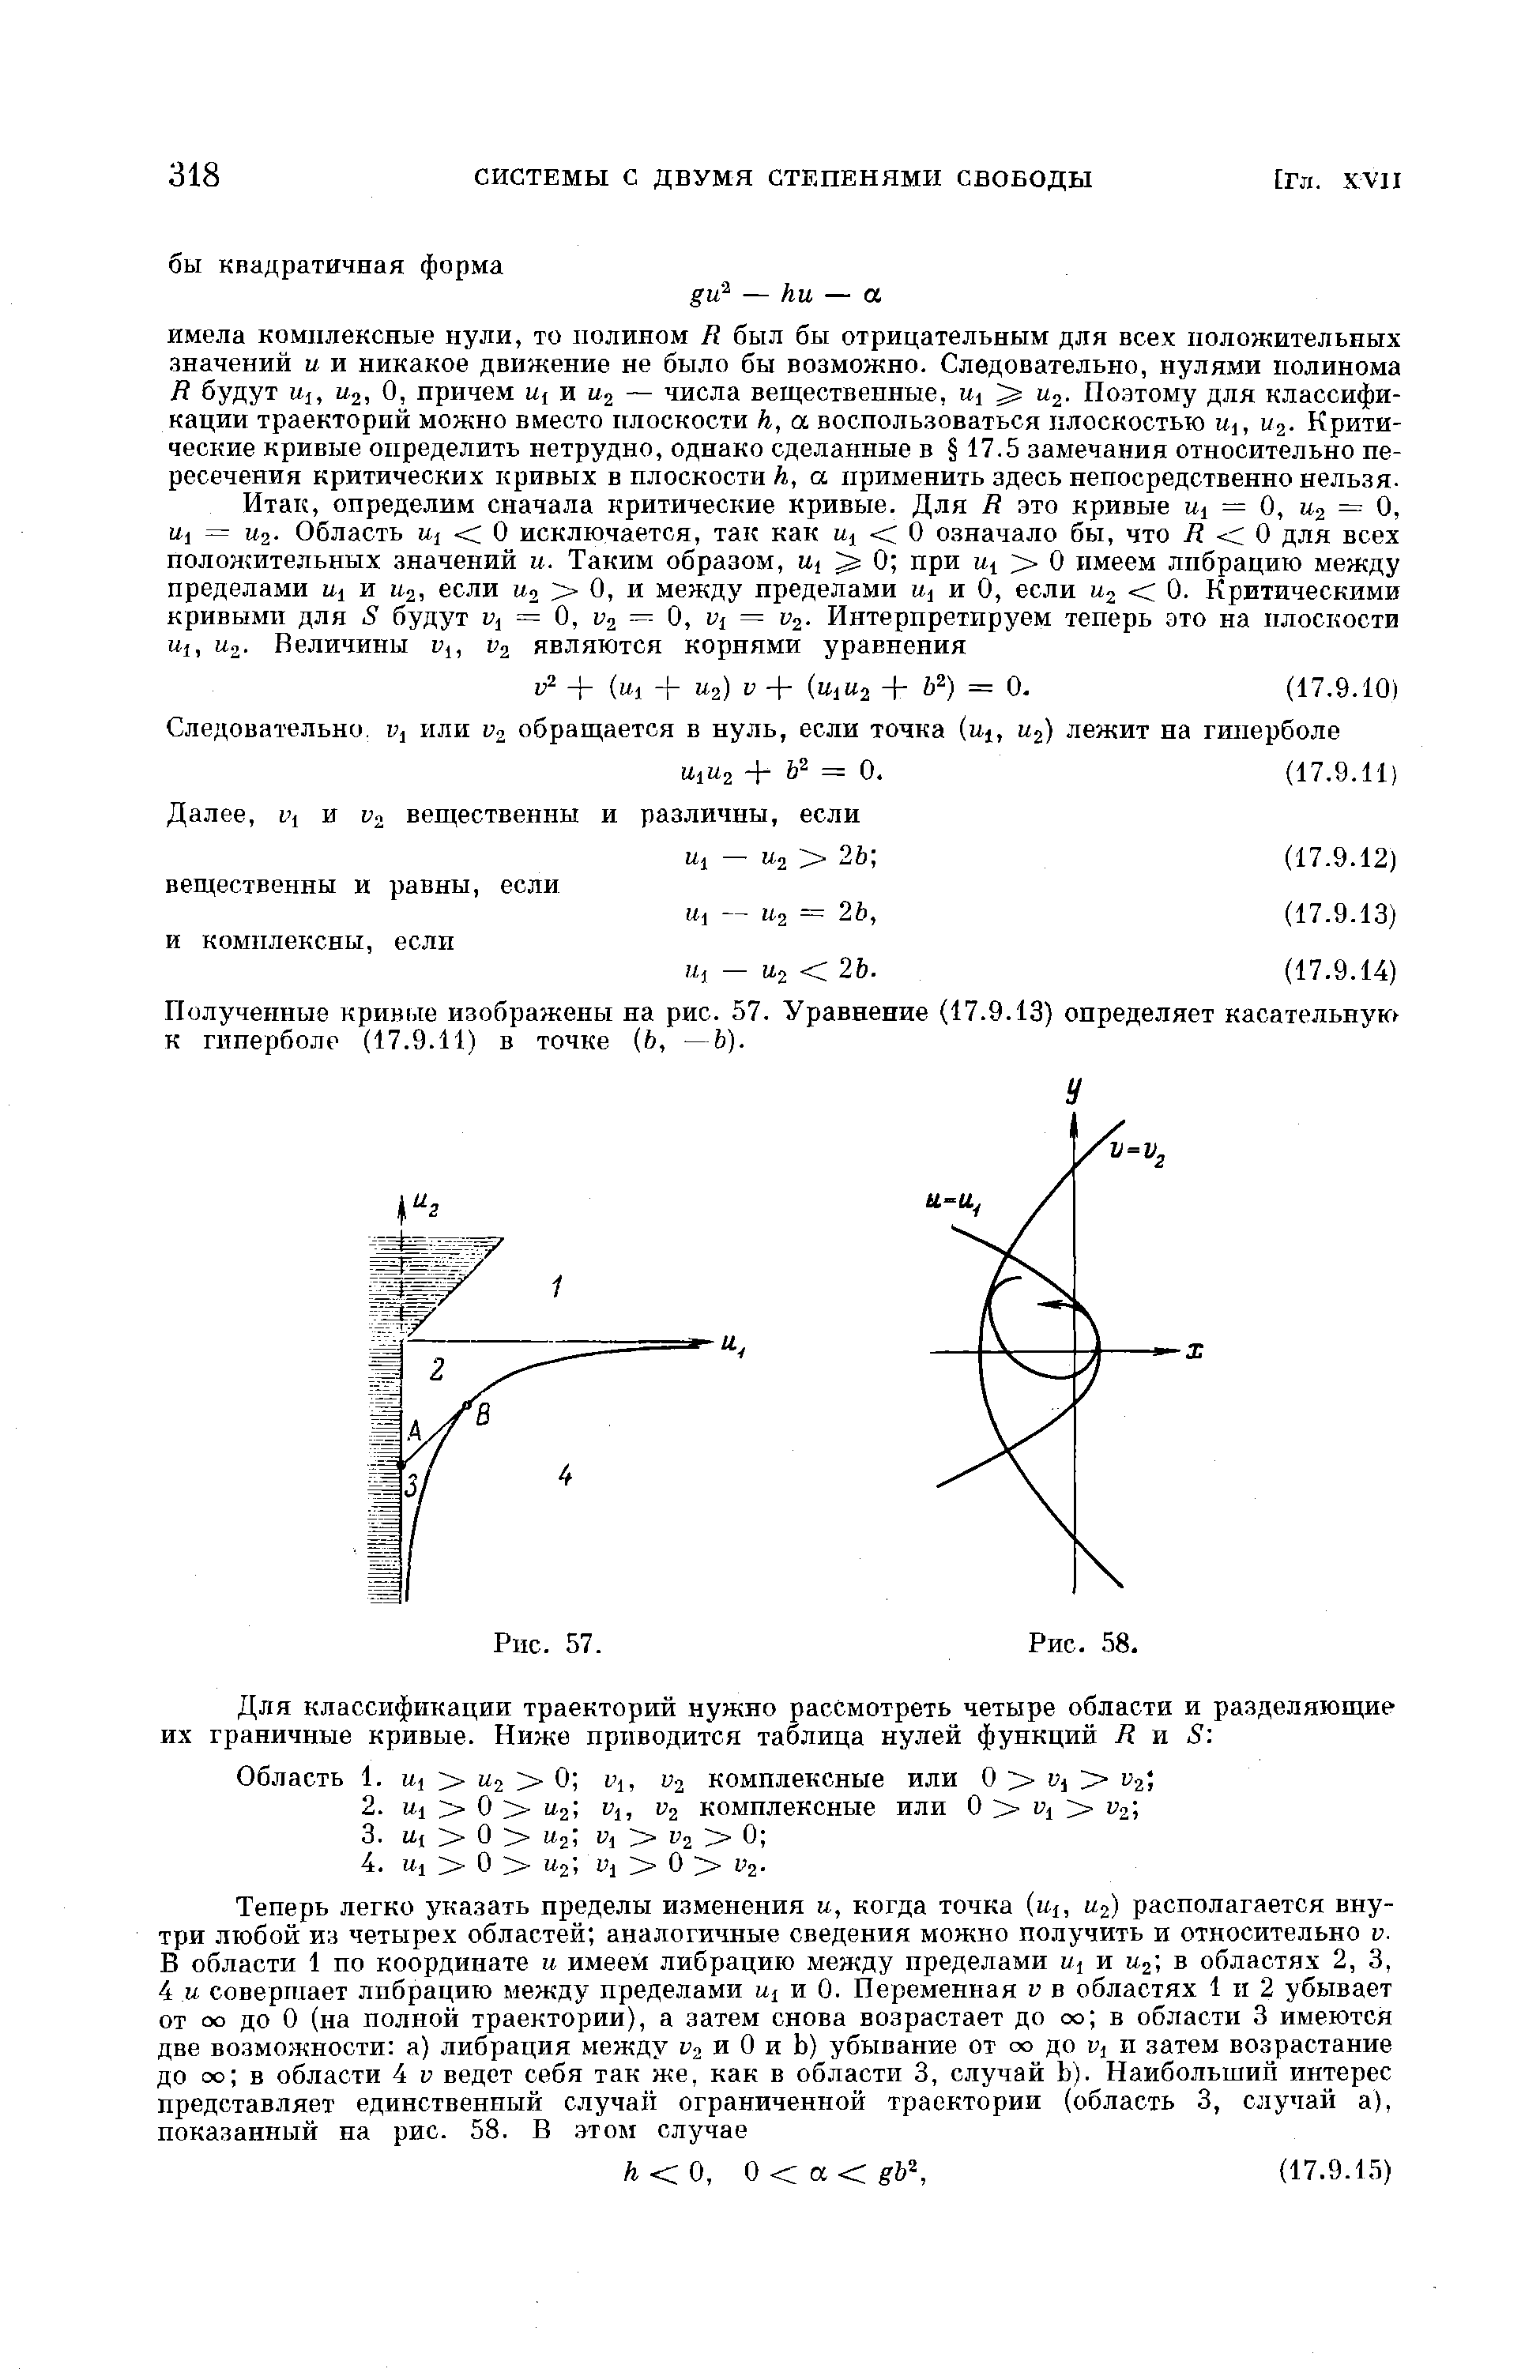 Полученные кривые изображены на рис. 57. Уравнение (17.9.13) определяет касательную к гиперболе (17.9.11) в точке (6, —Ь).
